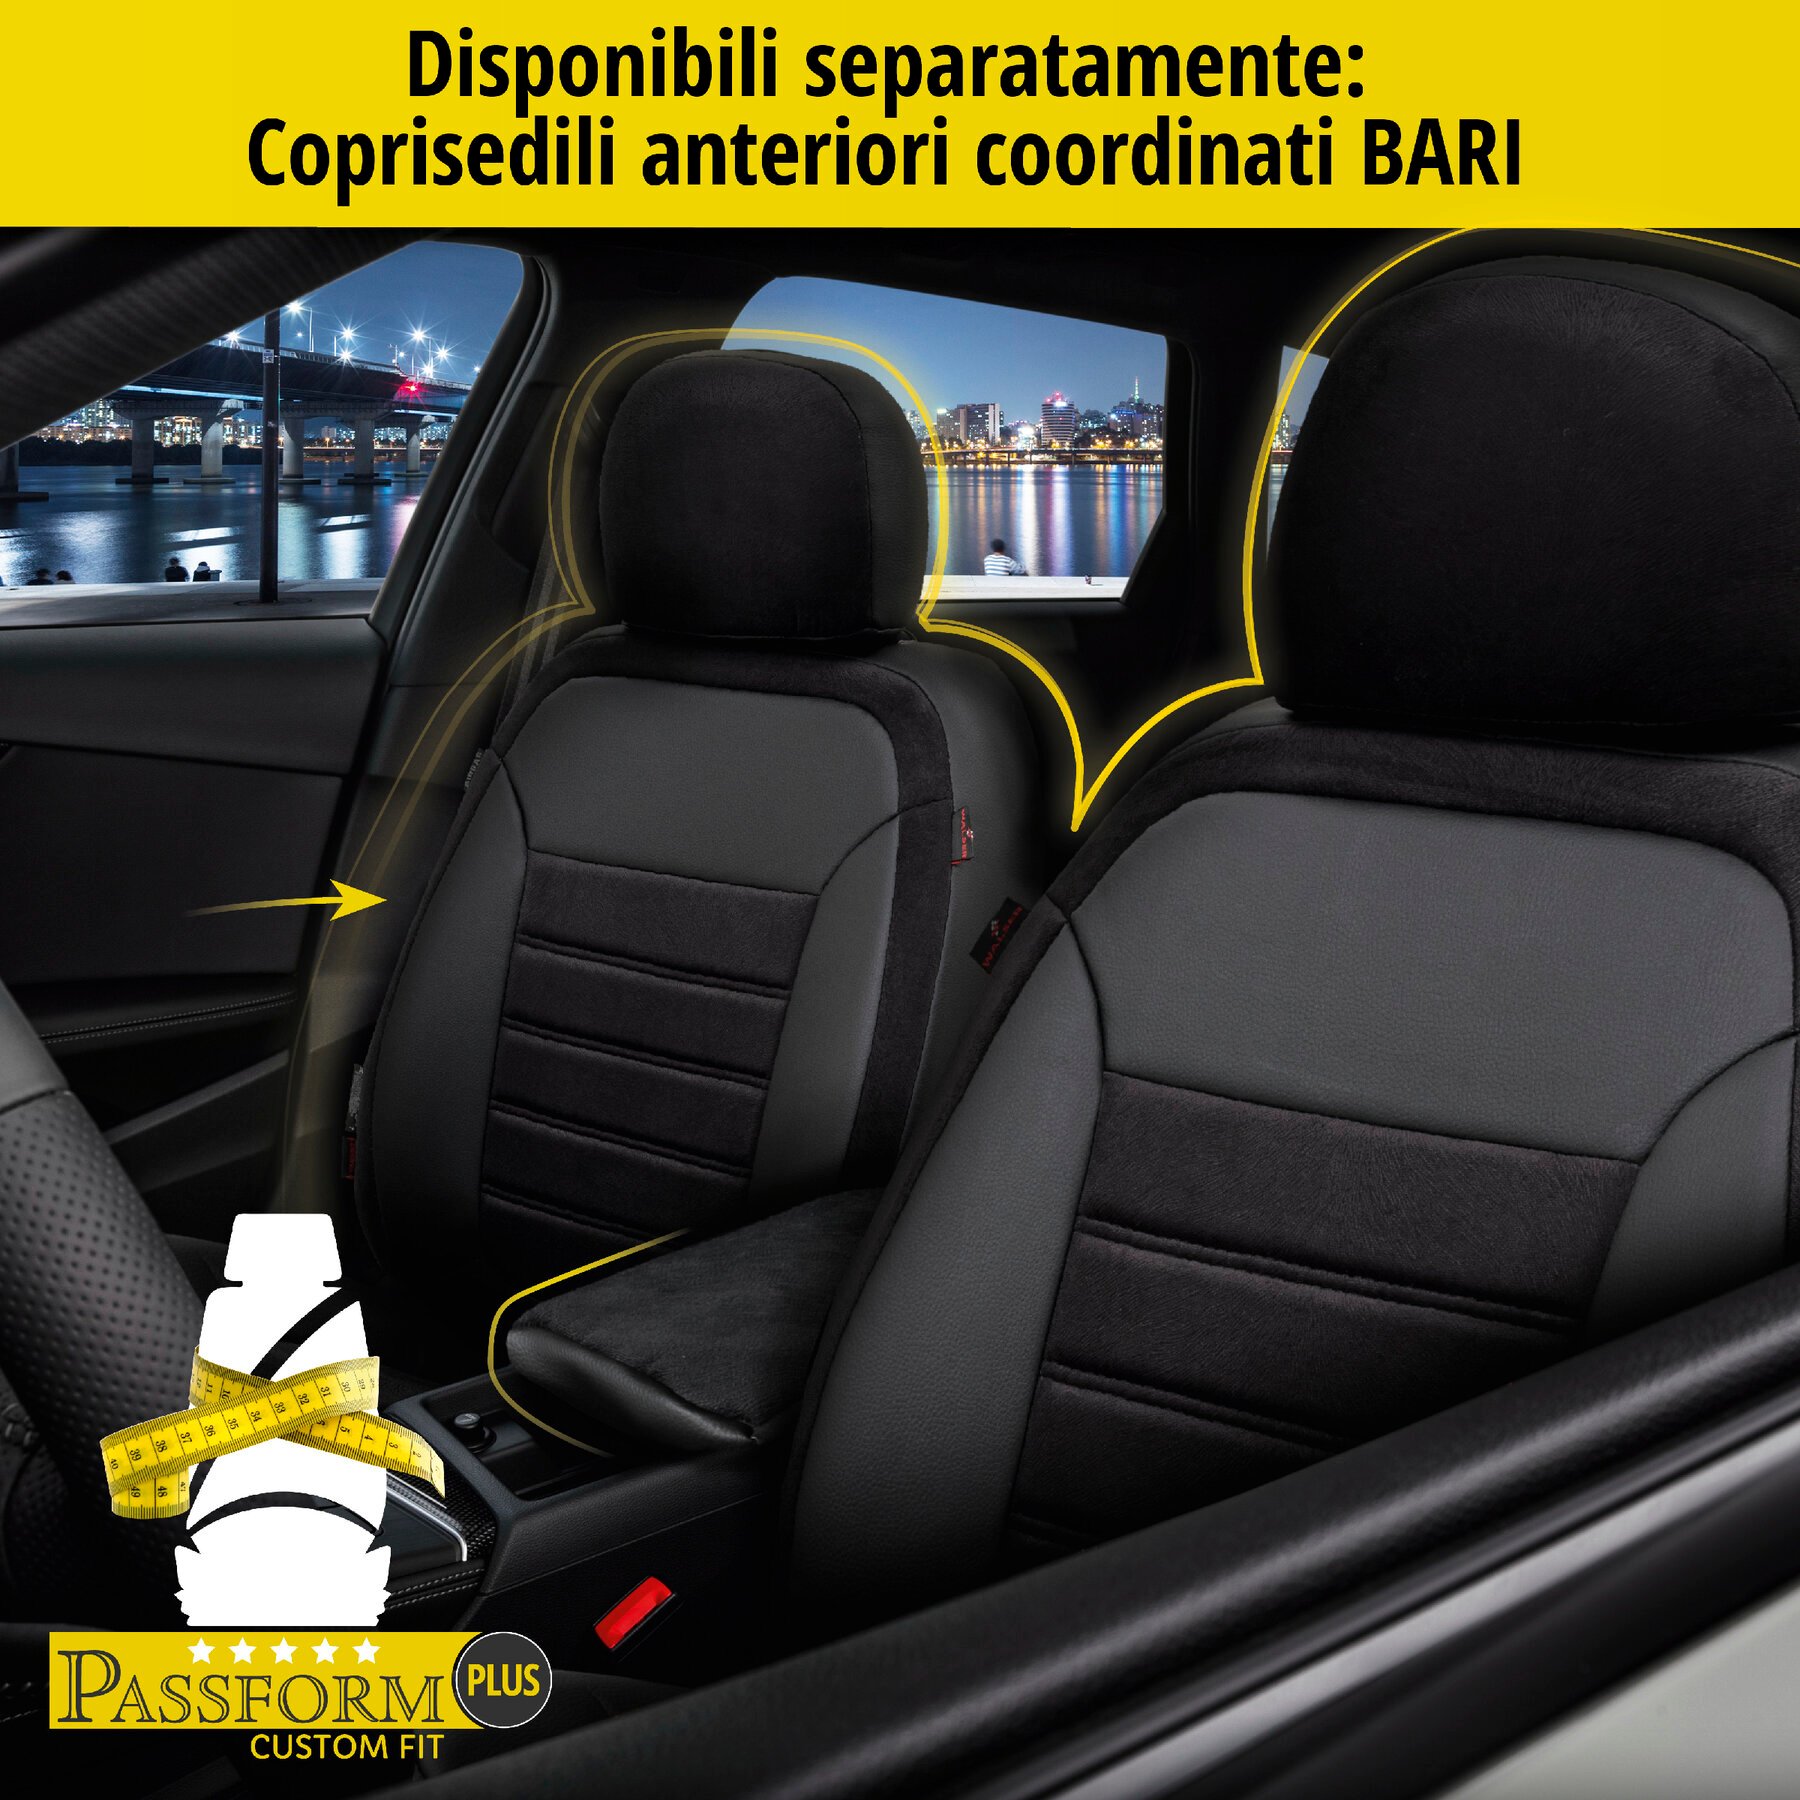 Coprisedili Bari per VW Passat Comfortline 08/2014-Oggi, 1 coprisedili posteriore per sedili normali